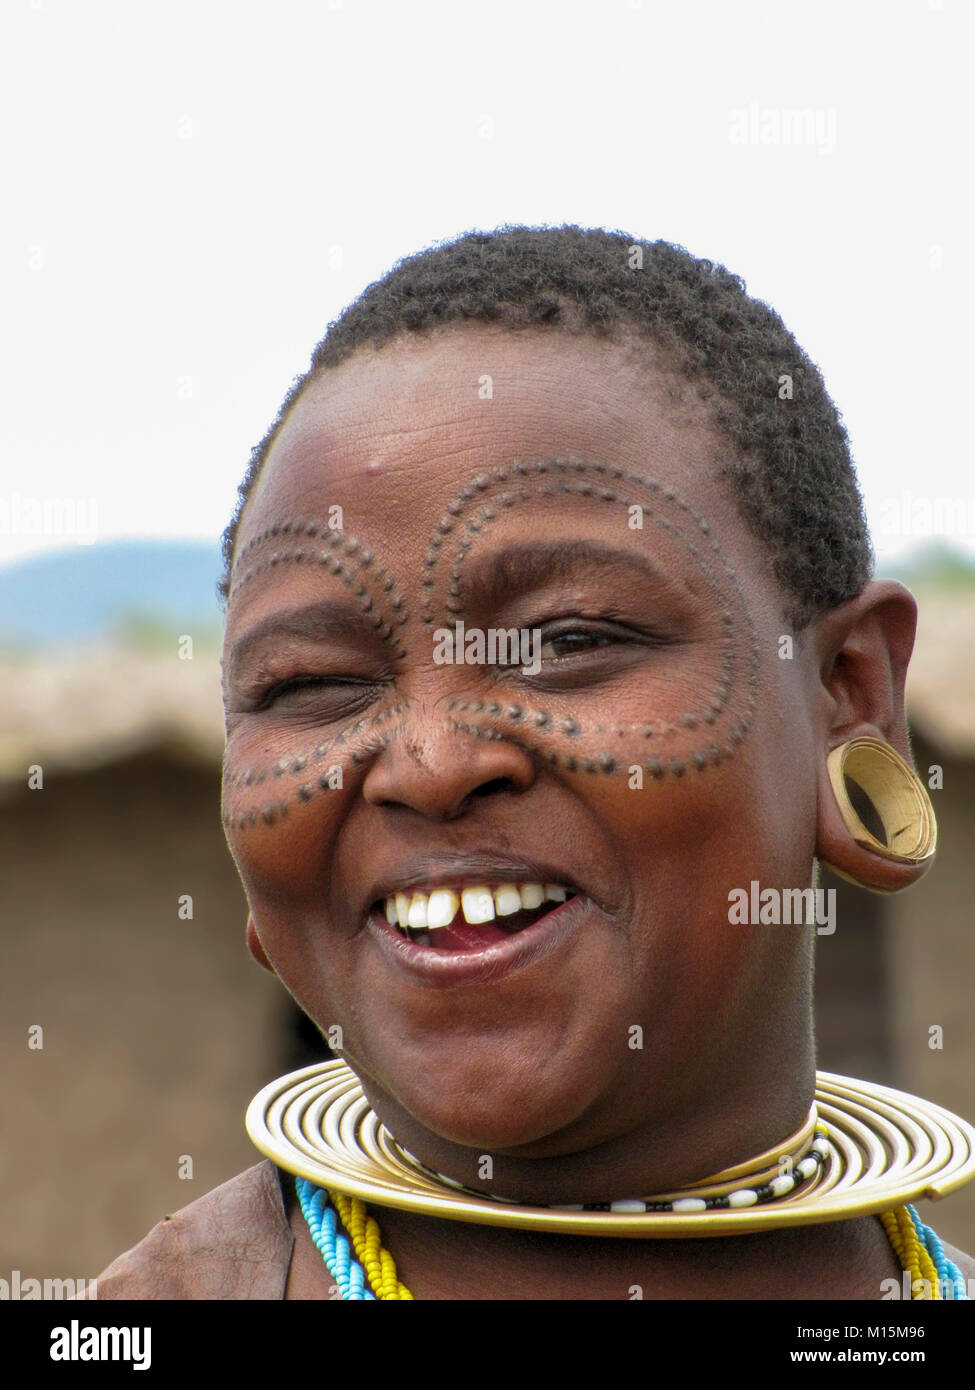 Portrait d'une jeune femme Datoga avec beauté cicatrices autour des yeux. Photographié au lac Eyasi, Tanzanie Banque D'Images